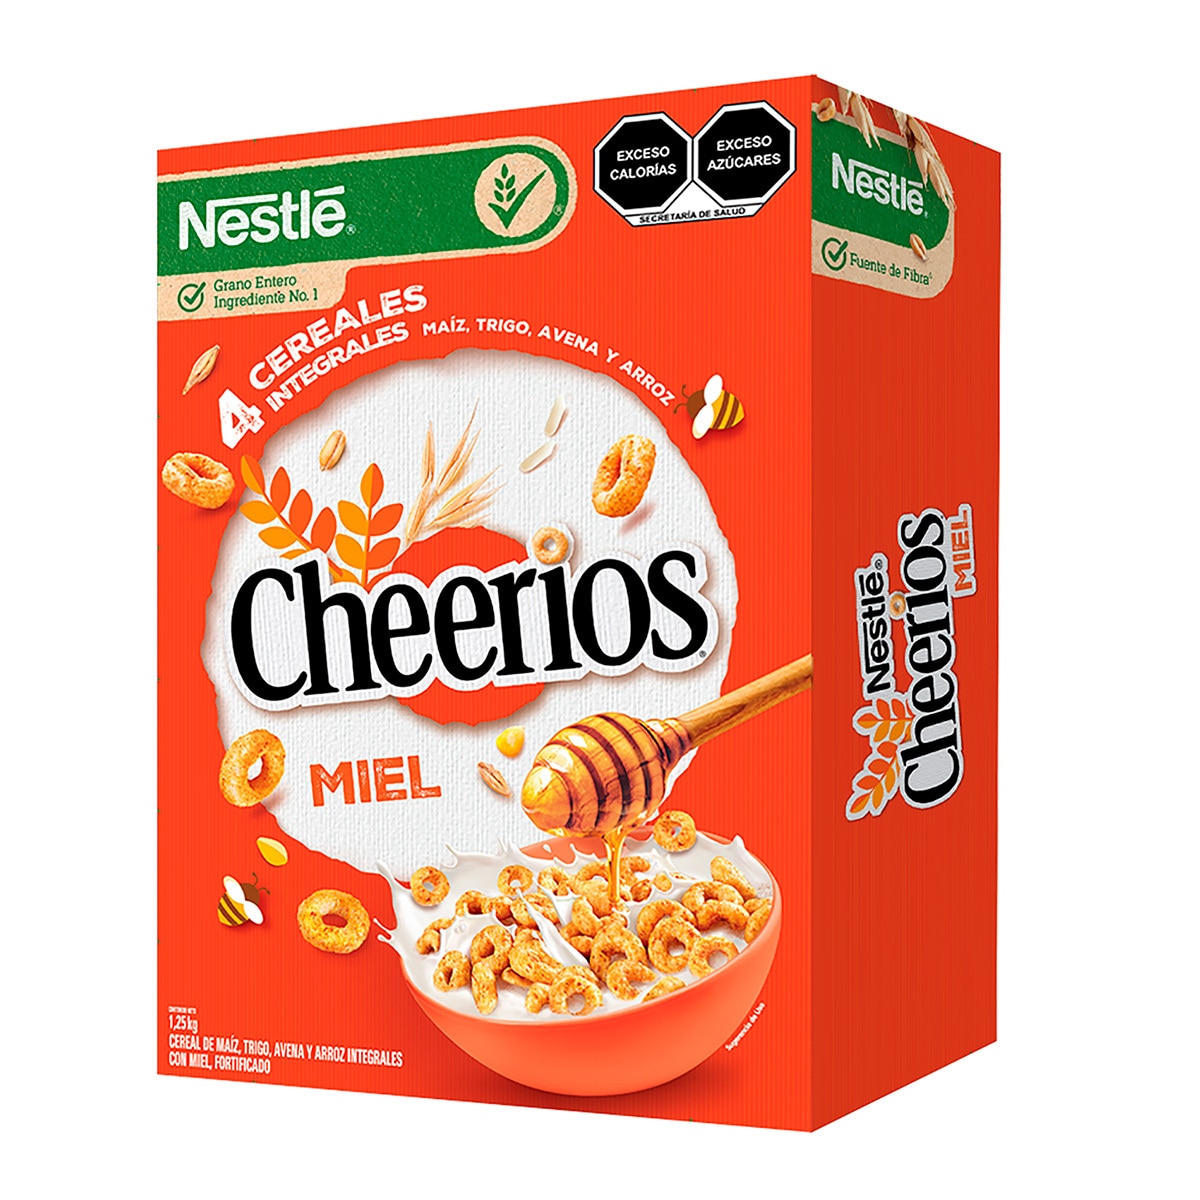 Cheerios Miel Cereal 1.25 kg